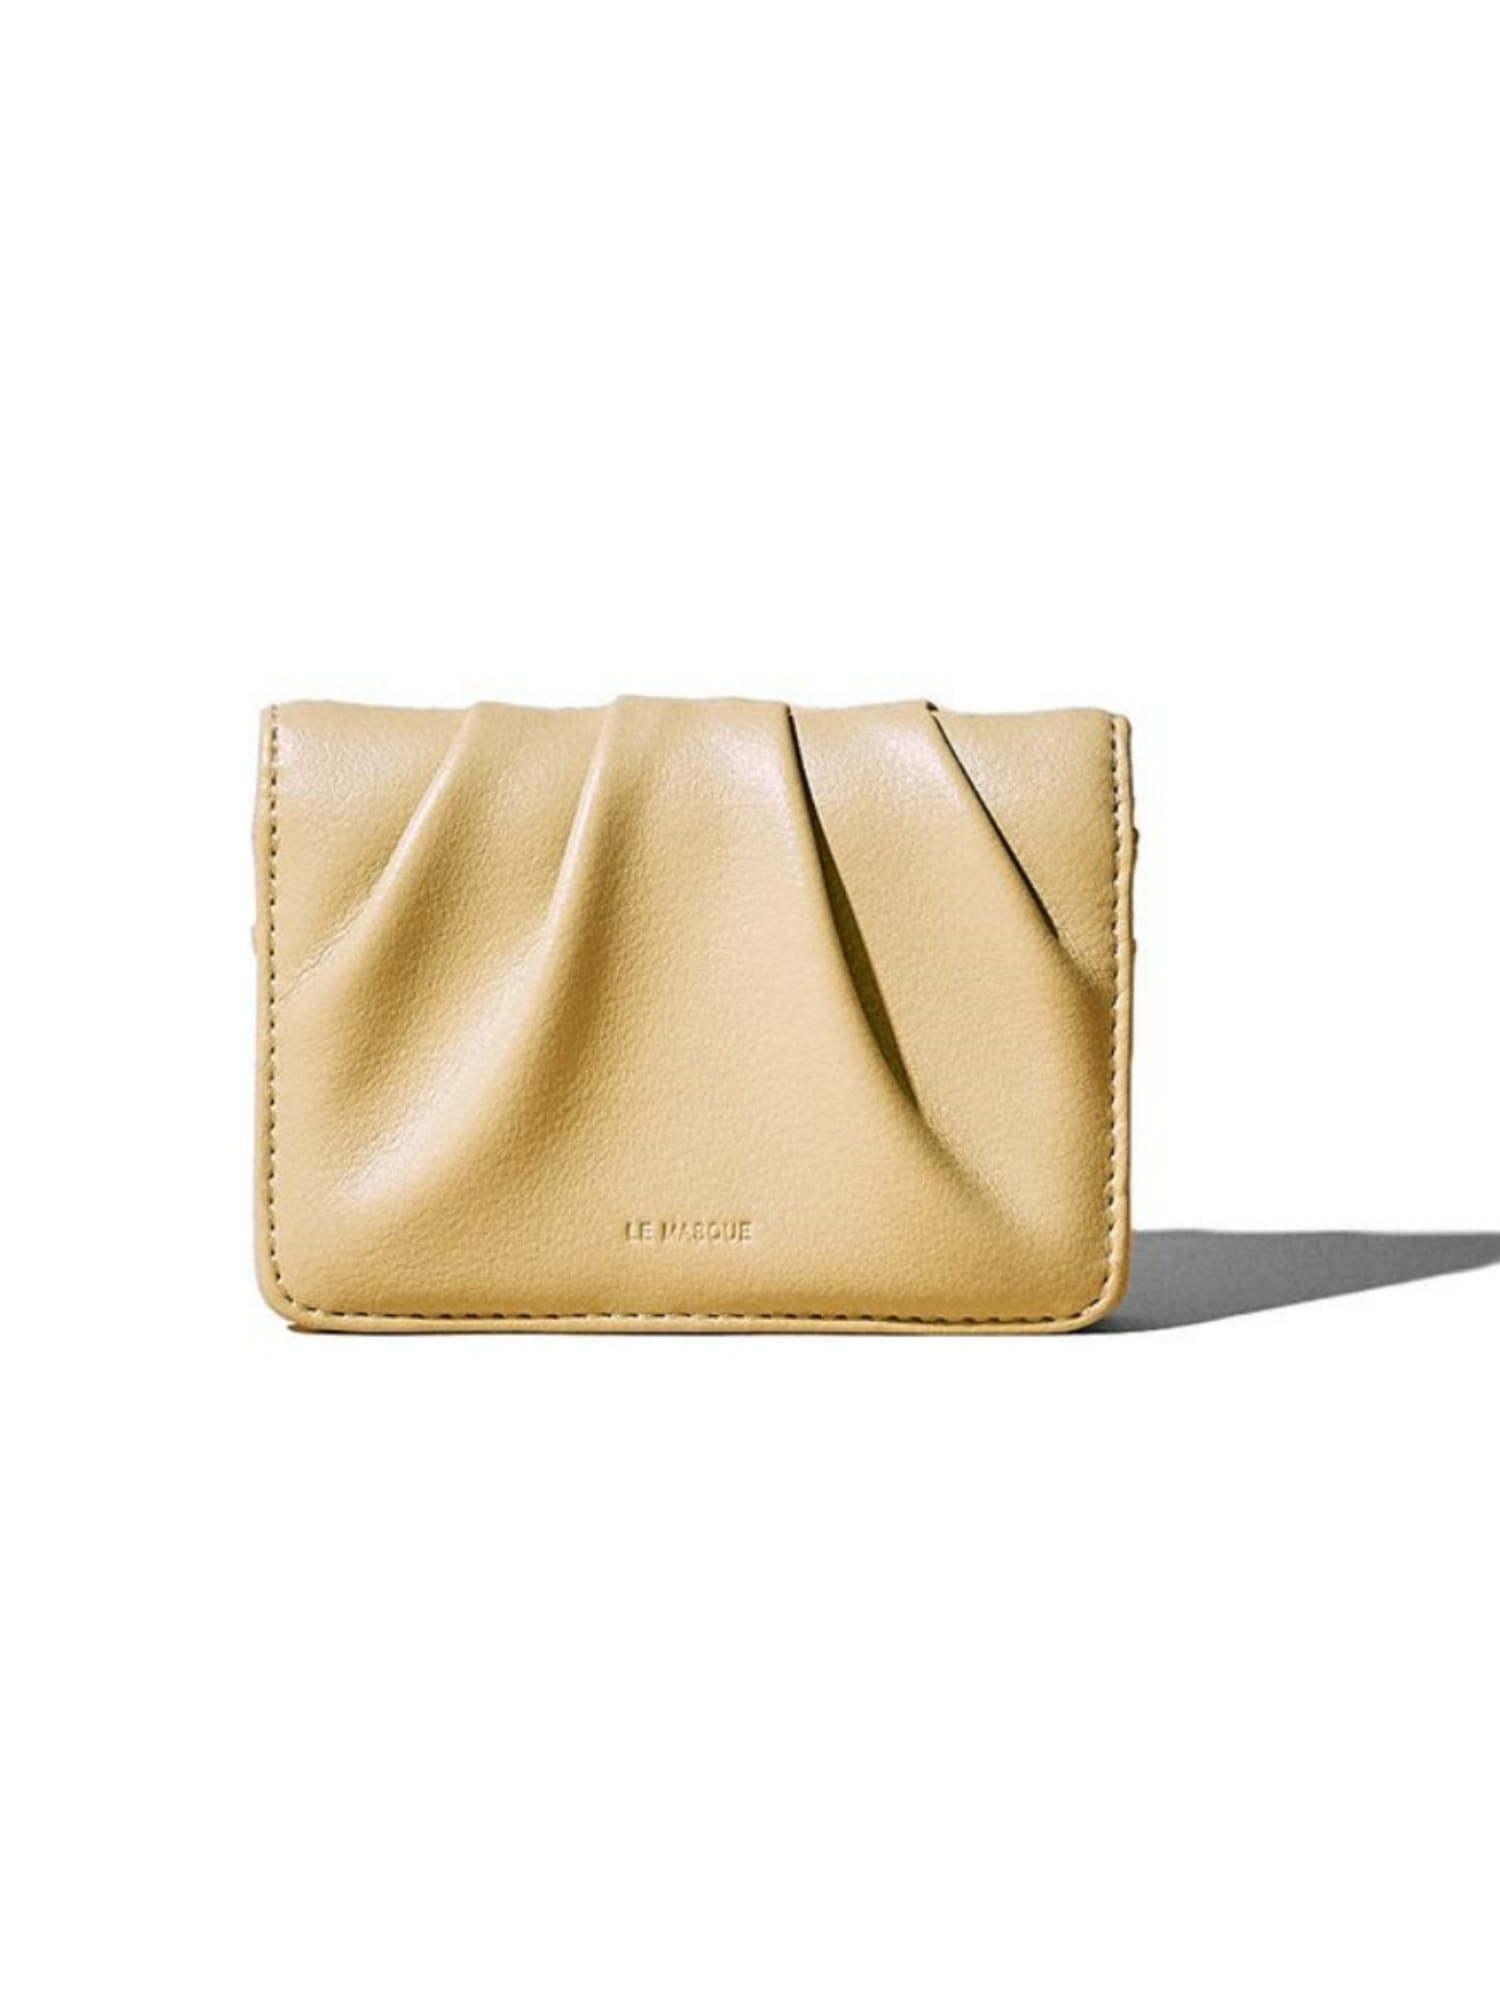 DOUGH Soft Leather Card Case Wallet - Pale Lemon